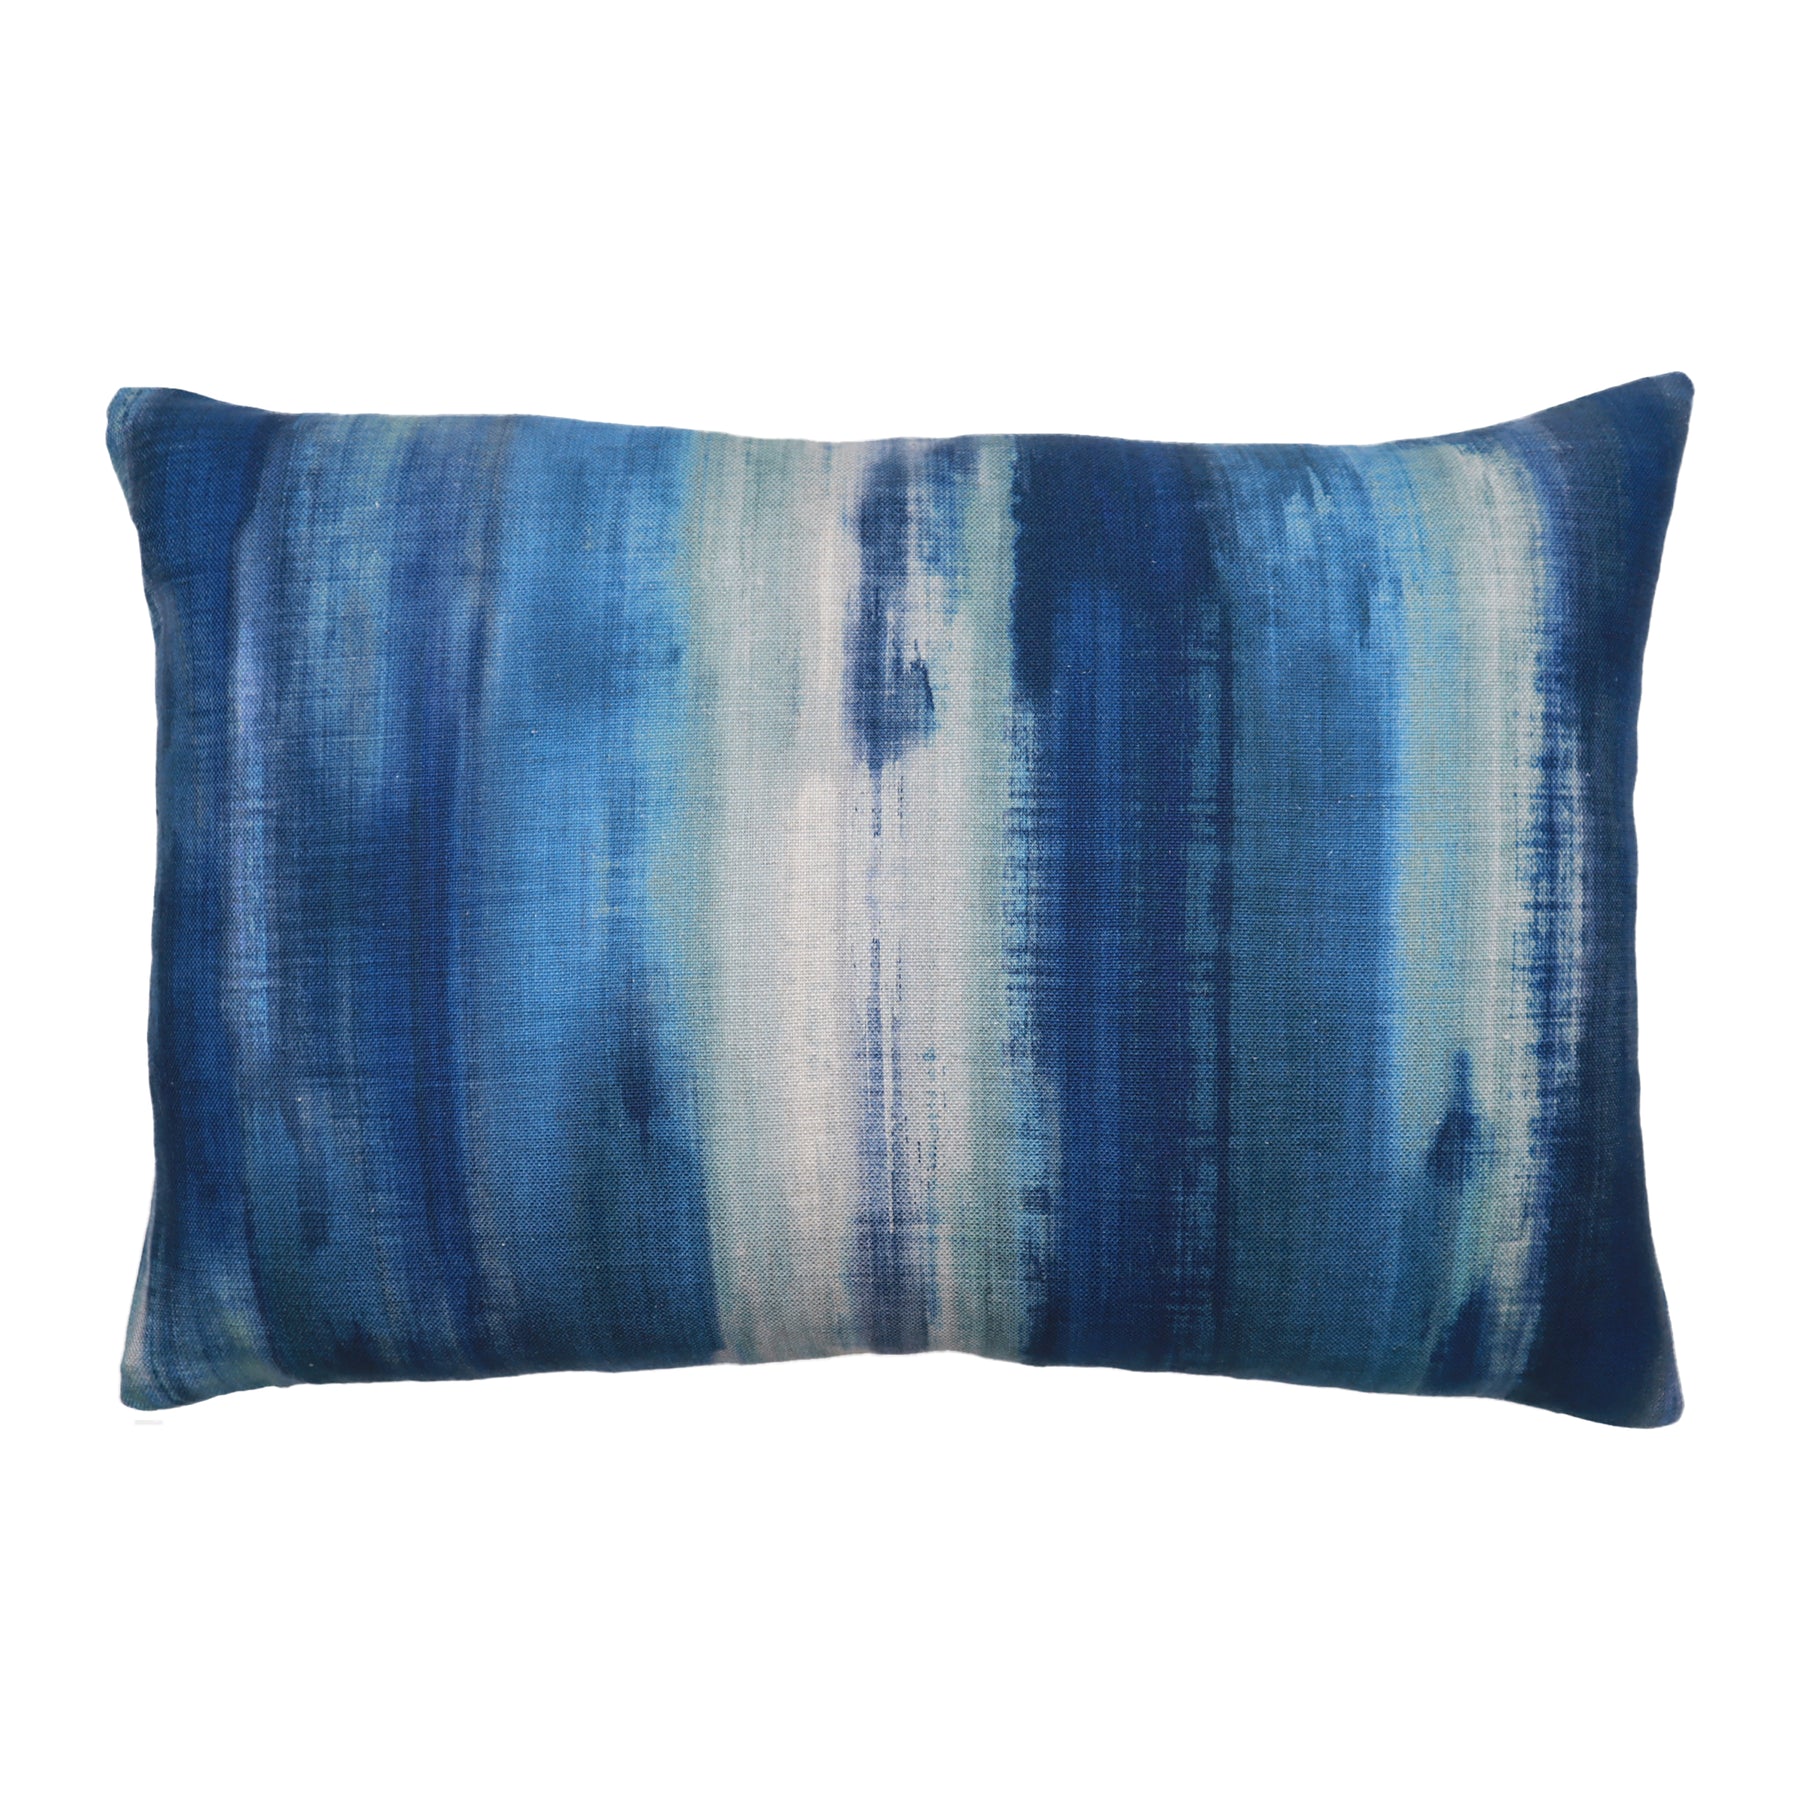 Decorative Pillows, Throw Pillows & Outdoor Pillows | Piper Collection